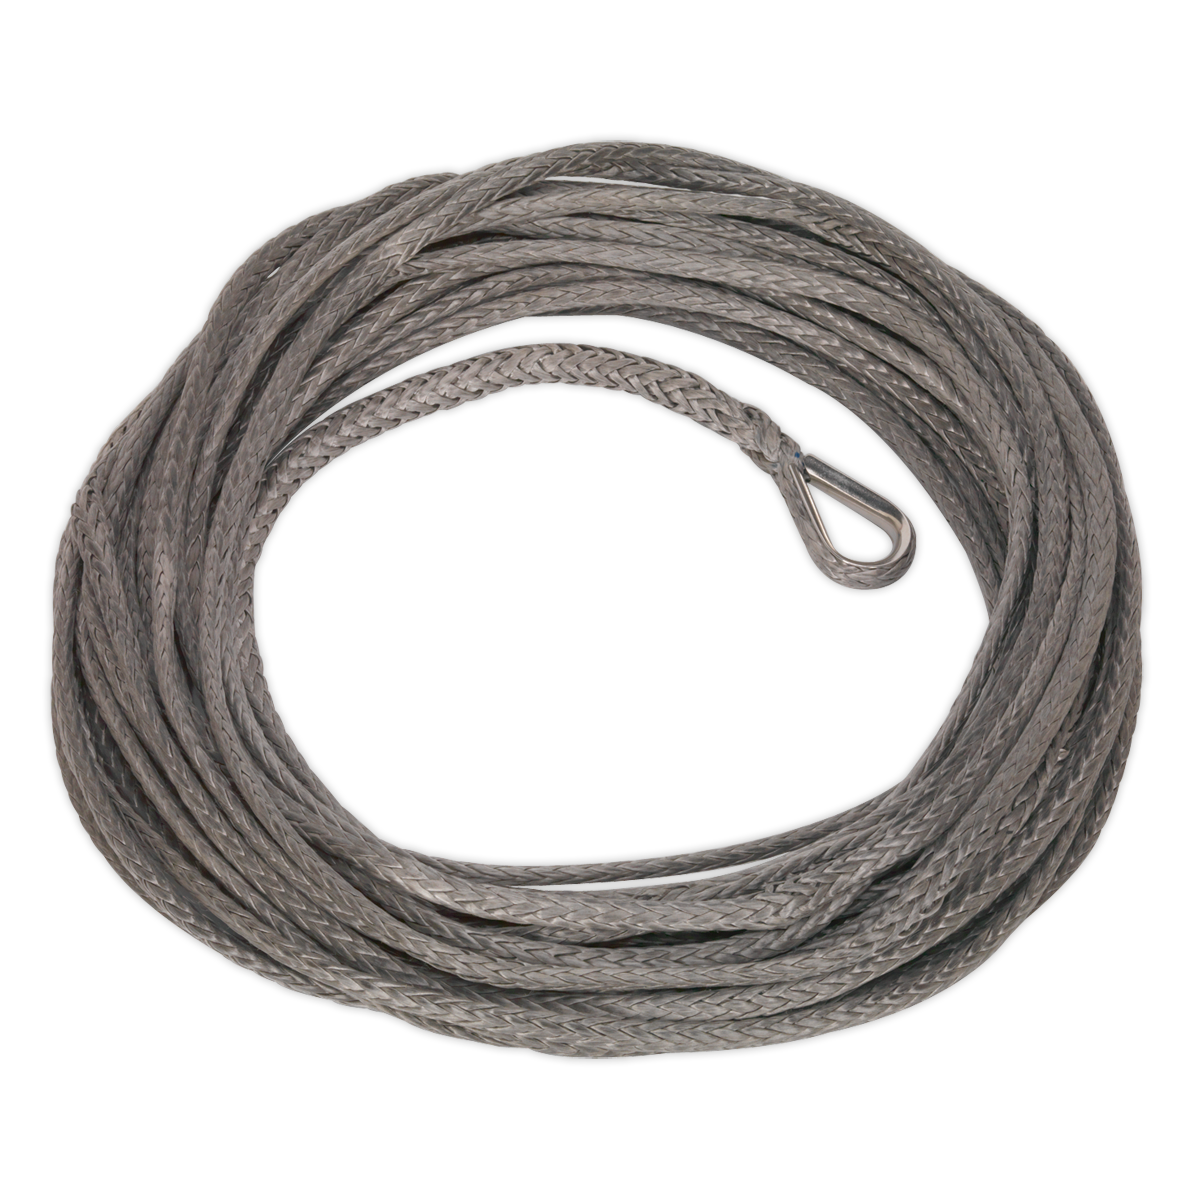 Sealey Dyneema Rope (Ø9mm x 26m) for SWR4300 & SRW5450